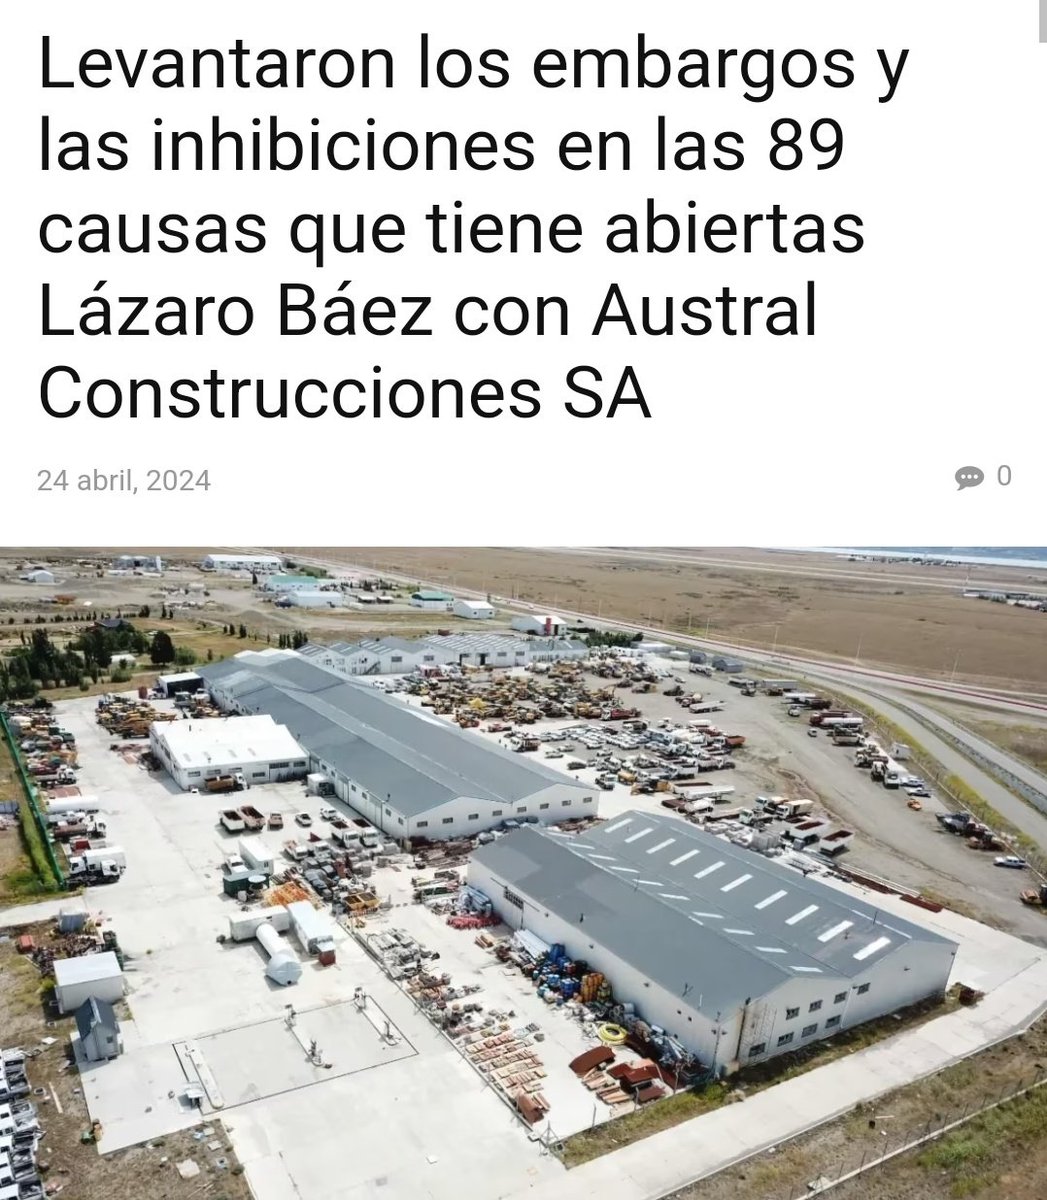 Esto se hizo para que los 89 bienes que le fueron embargados a Báez puedan ser transferidos a sus nuevos titulares. El titular es lo bochornoso.